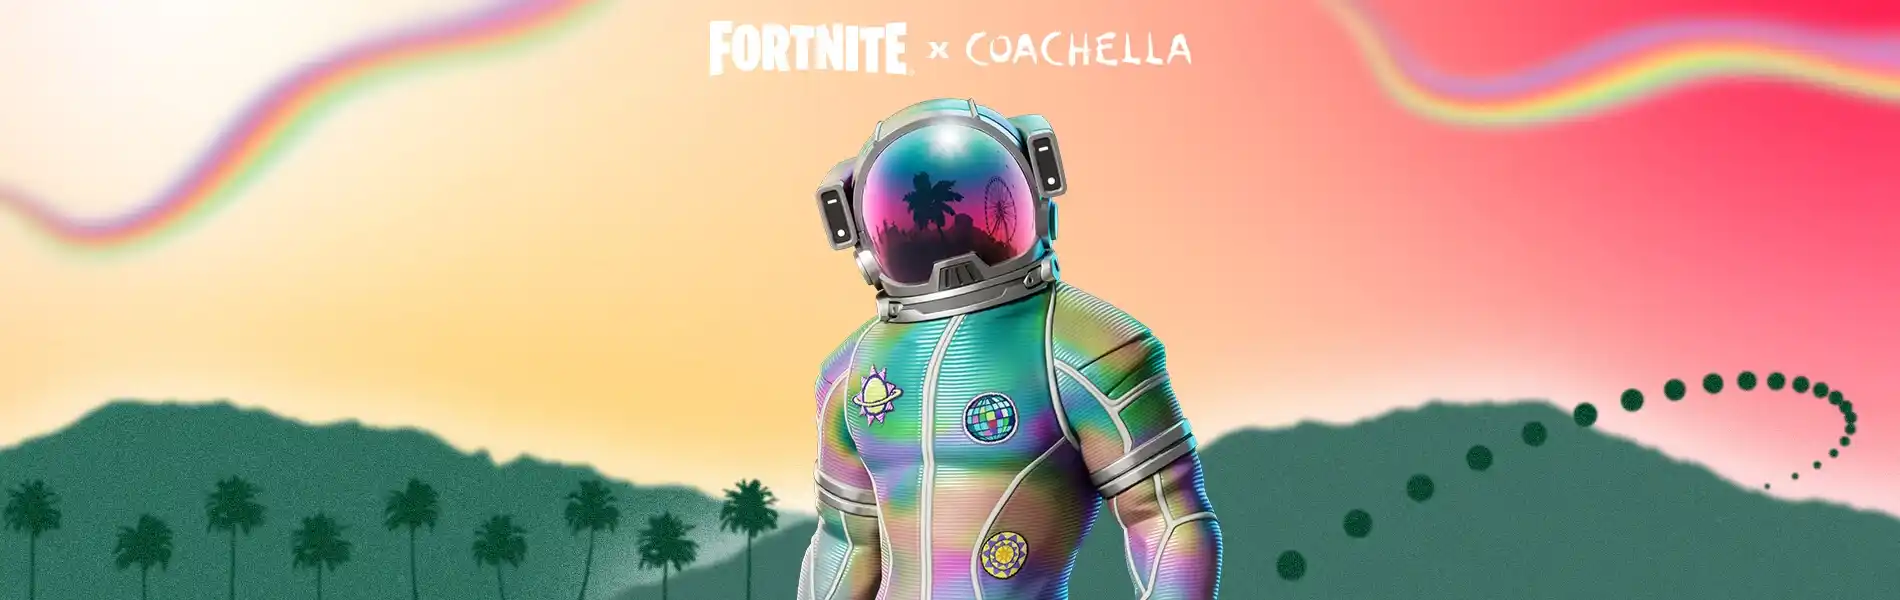 Fortnite Coachella